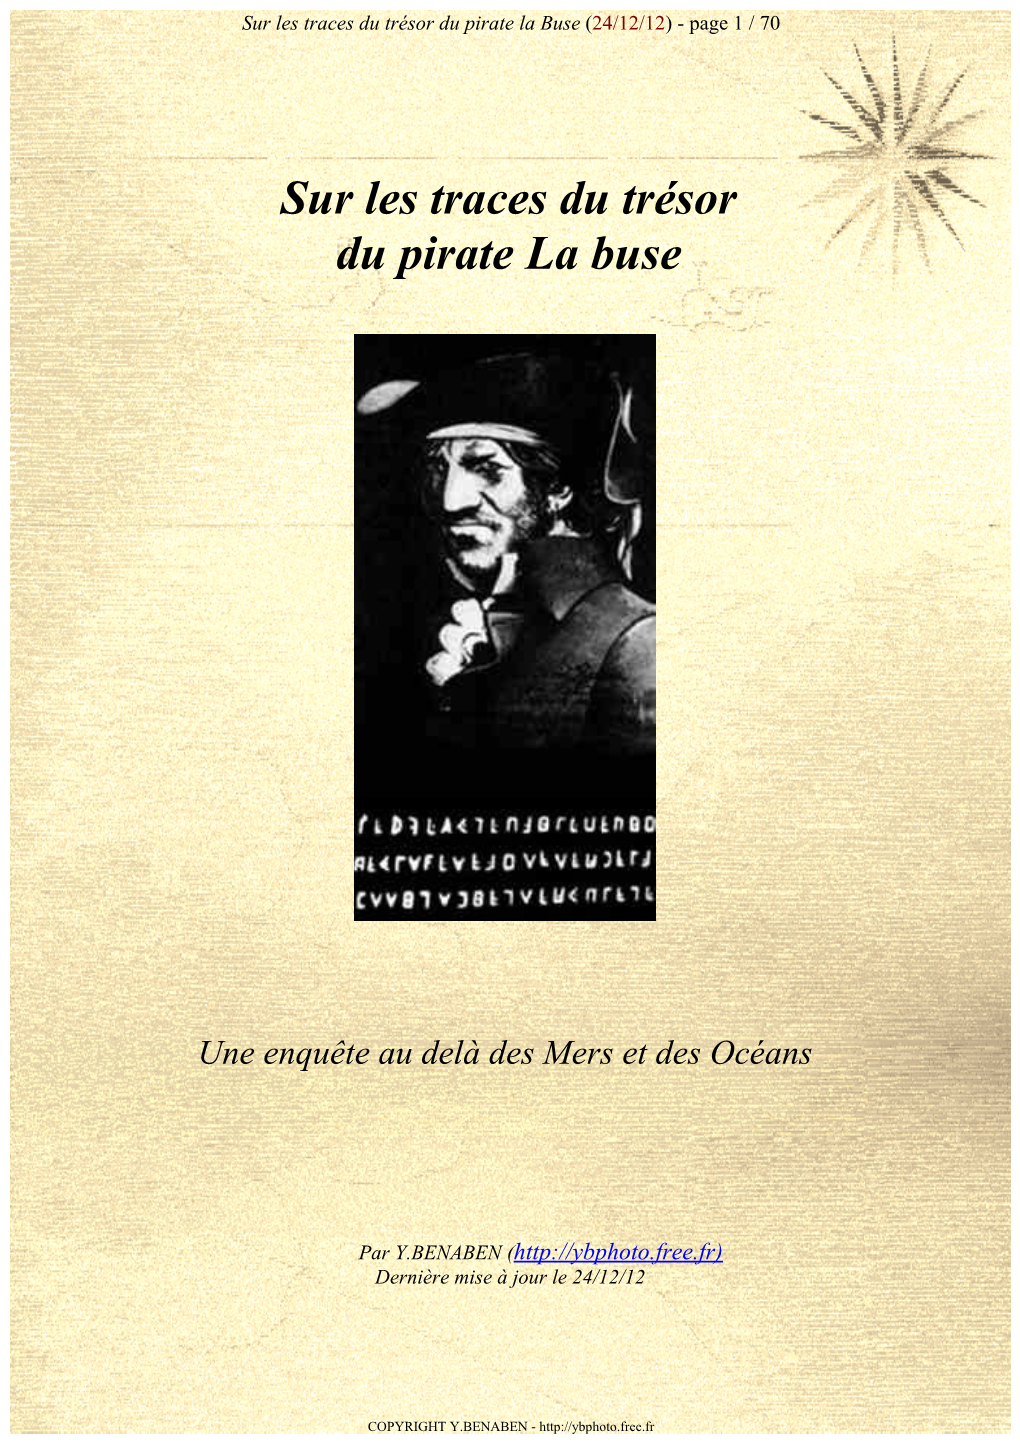 Sur Les Traces Du Trésor Du Pirate La Buse (24/12/12) - Page 1 / 70